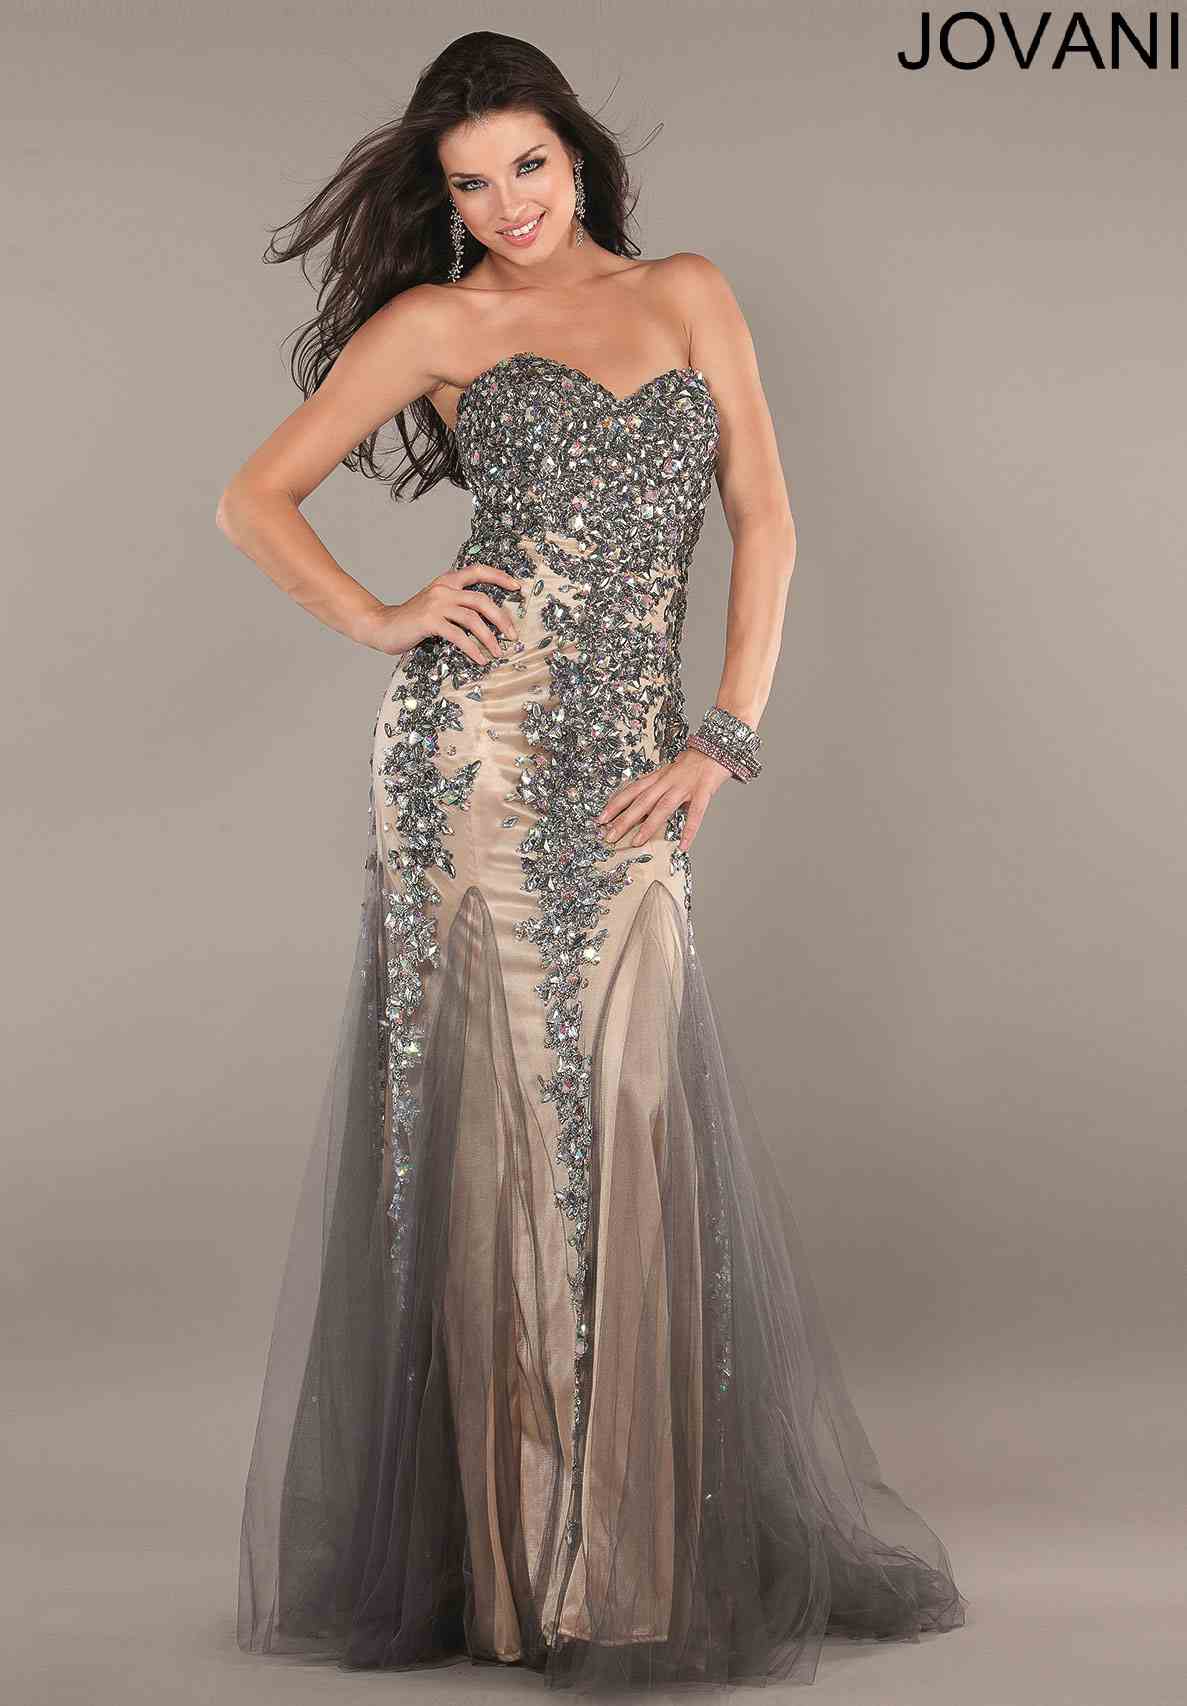 jovani 1676 prom dress id 1676 this 2014 jovani dress would be perfect ...